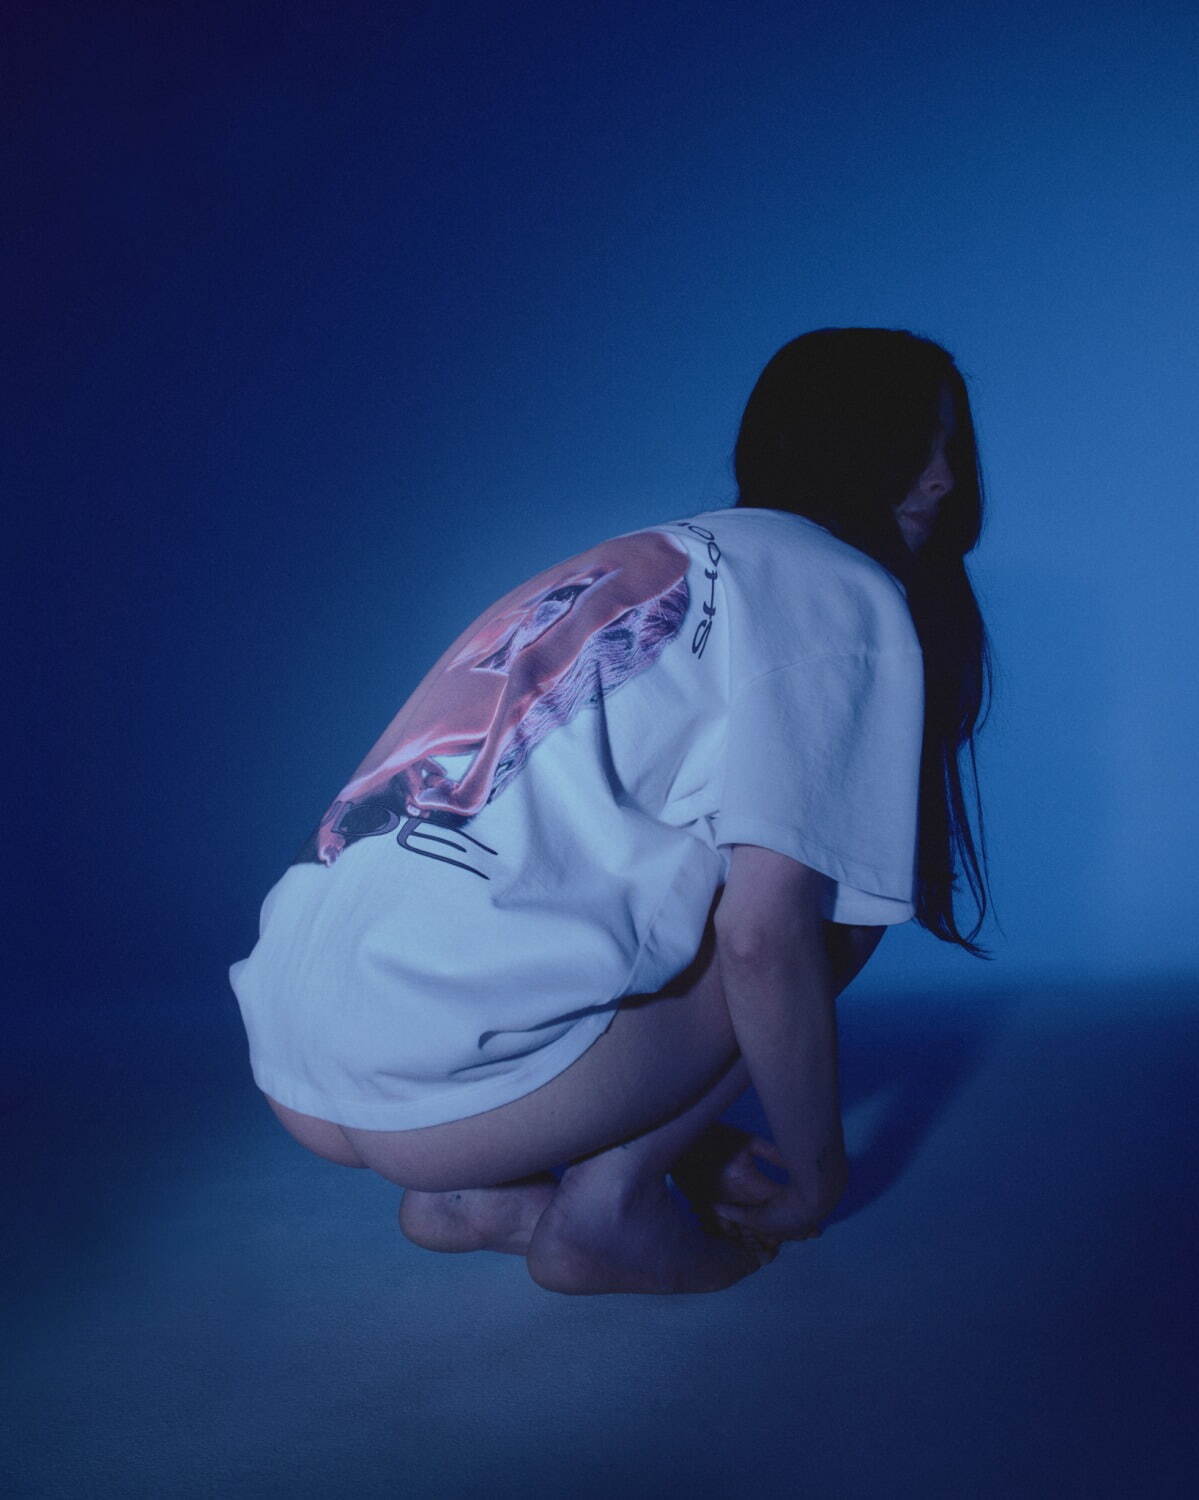 篠山紀信の写真がアパレルに、シュープコラボ新作ユニセックスTシャツ